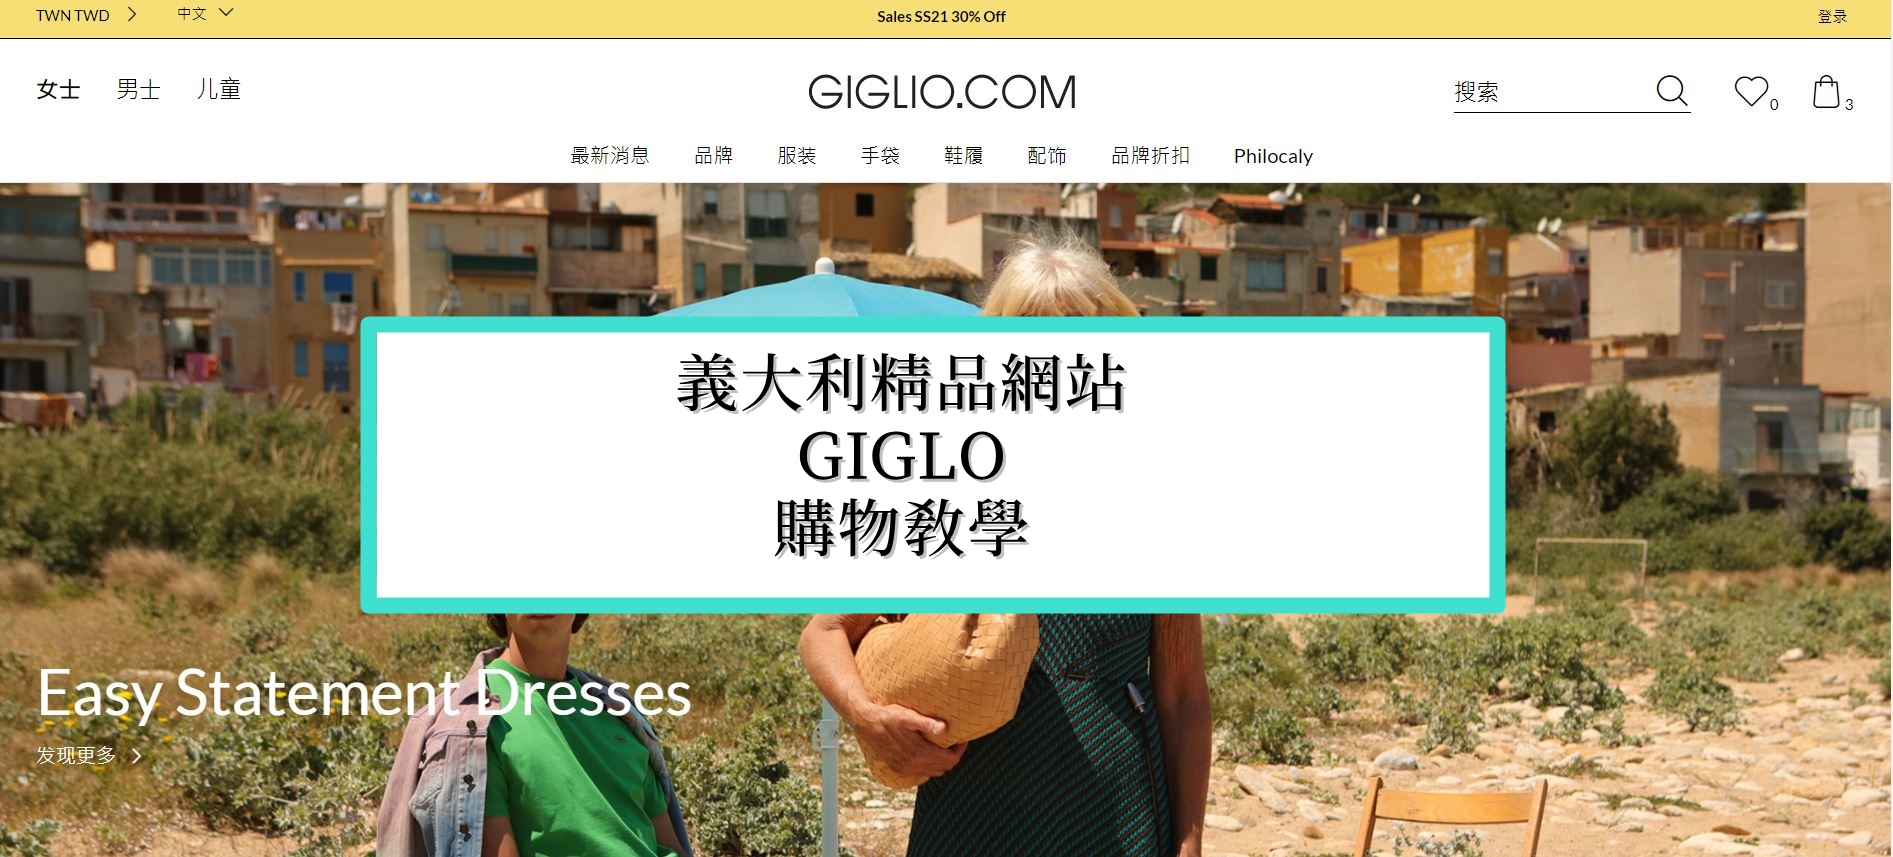 2021年最新Giglio購物教學，中英對照教你關稅/退貨/免運寄台灣/推薦品牌/註冊/結帳/快遞的注意事項 @依娃旅行小確幸